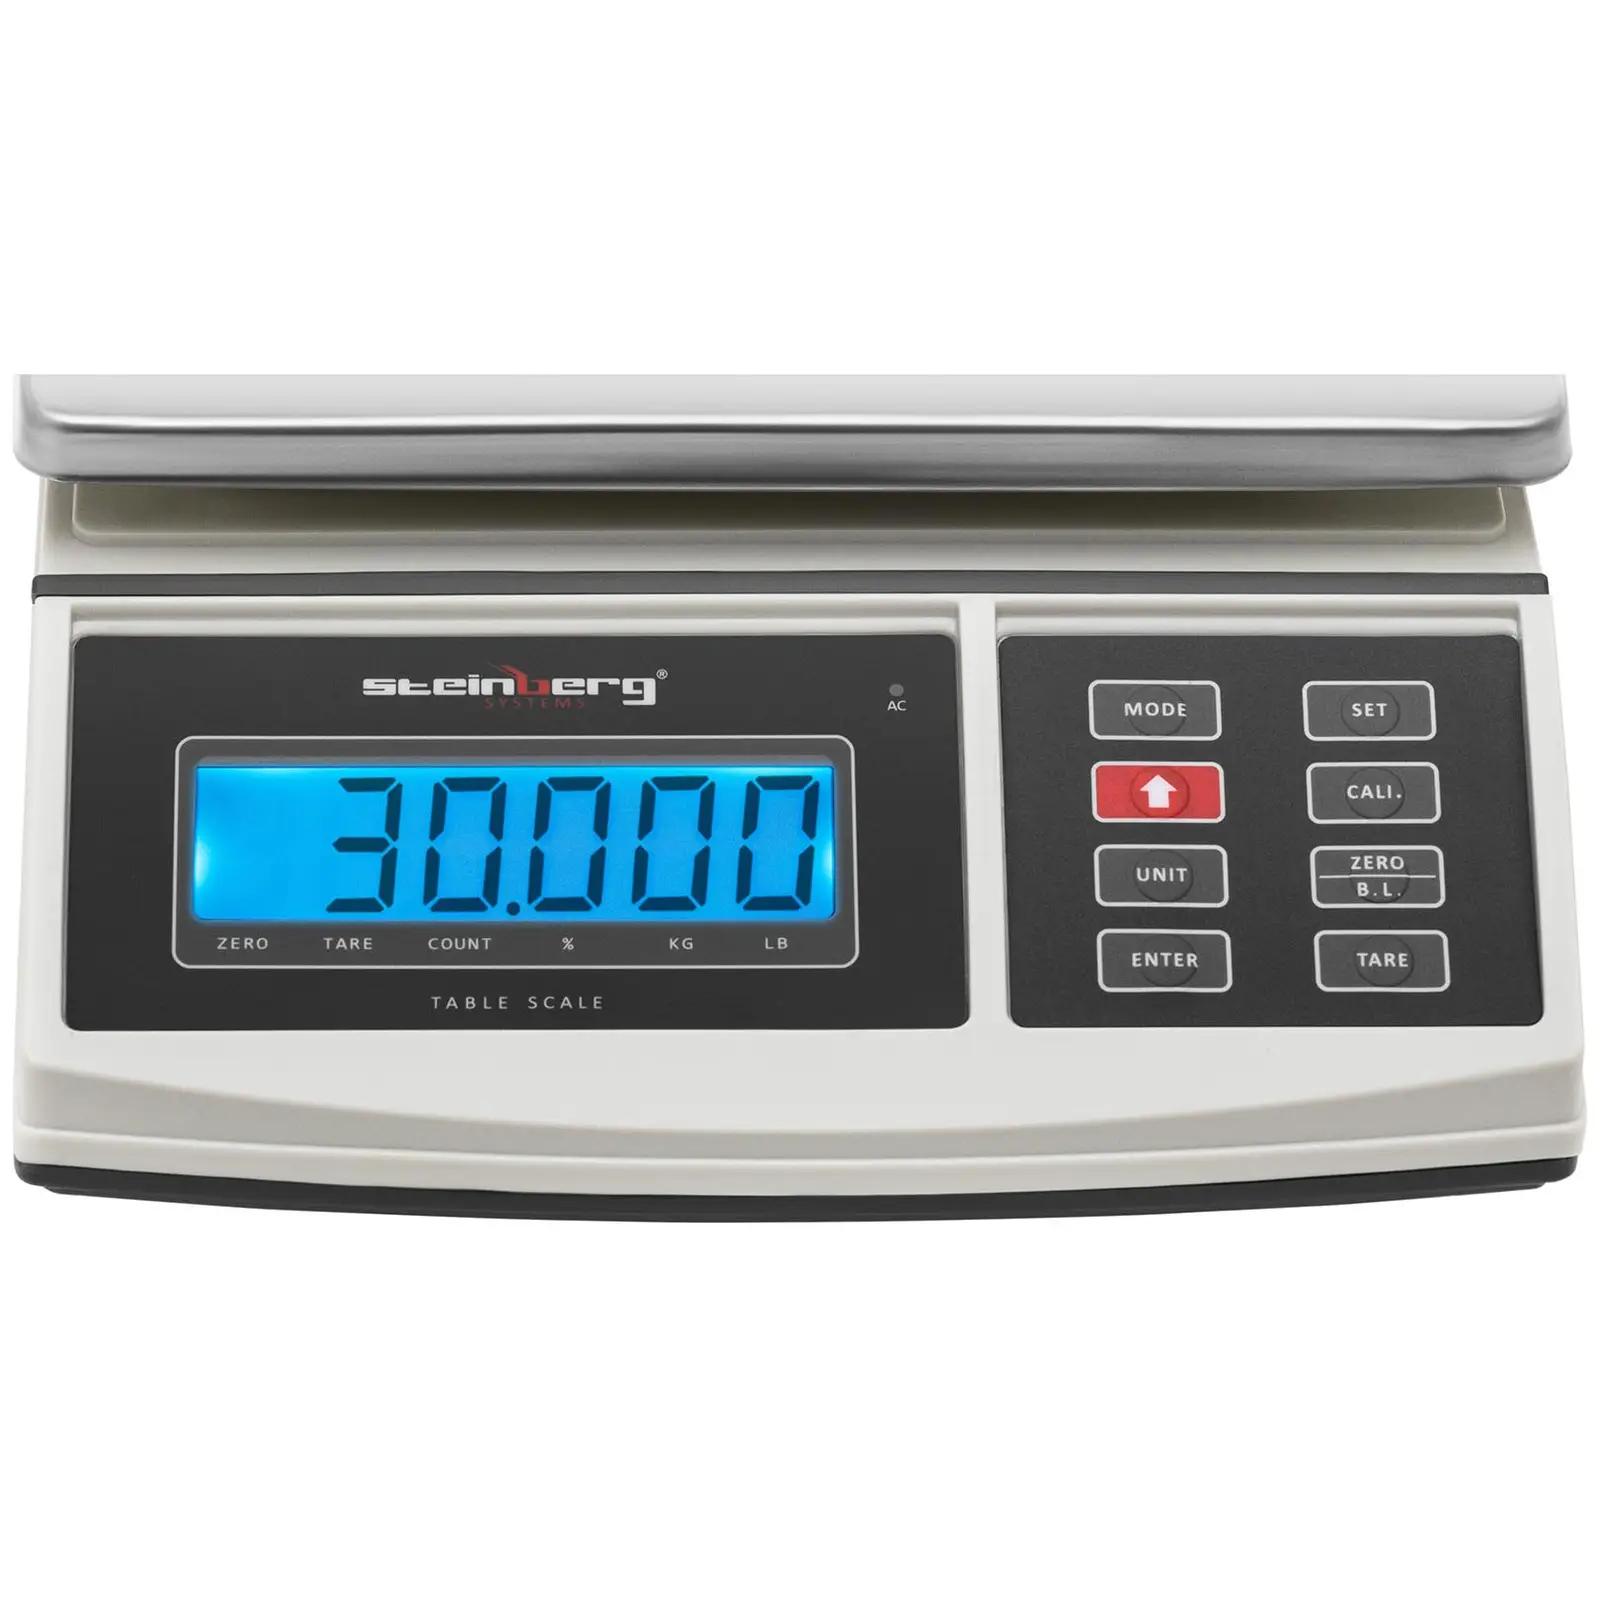 Bordsvåg - 3 kg/1 g - 210 x 270 mm - Indikatorlampa - LCD